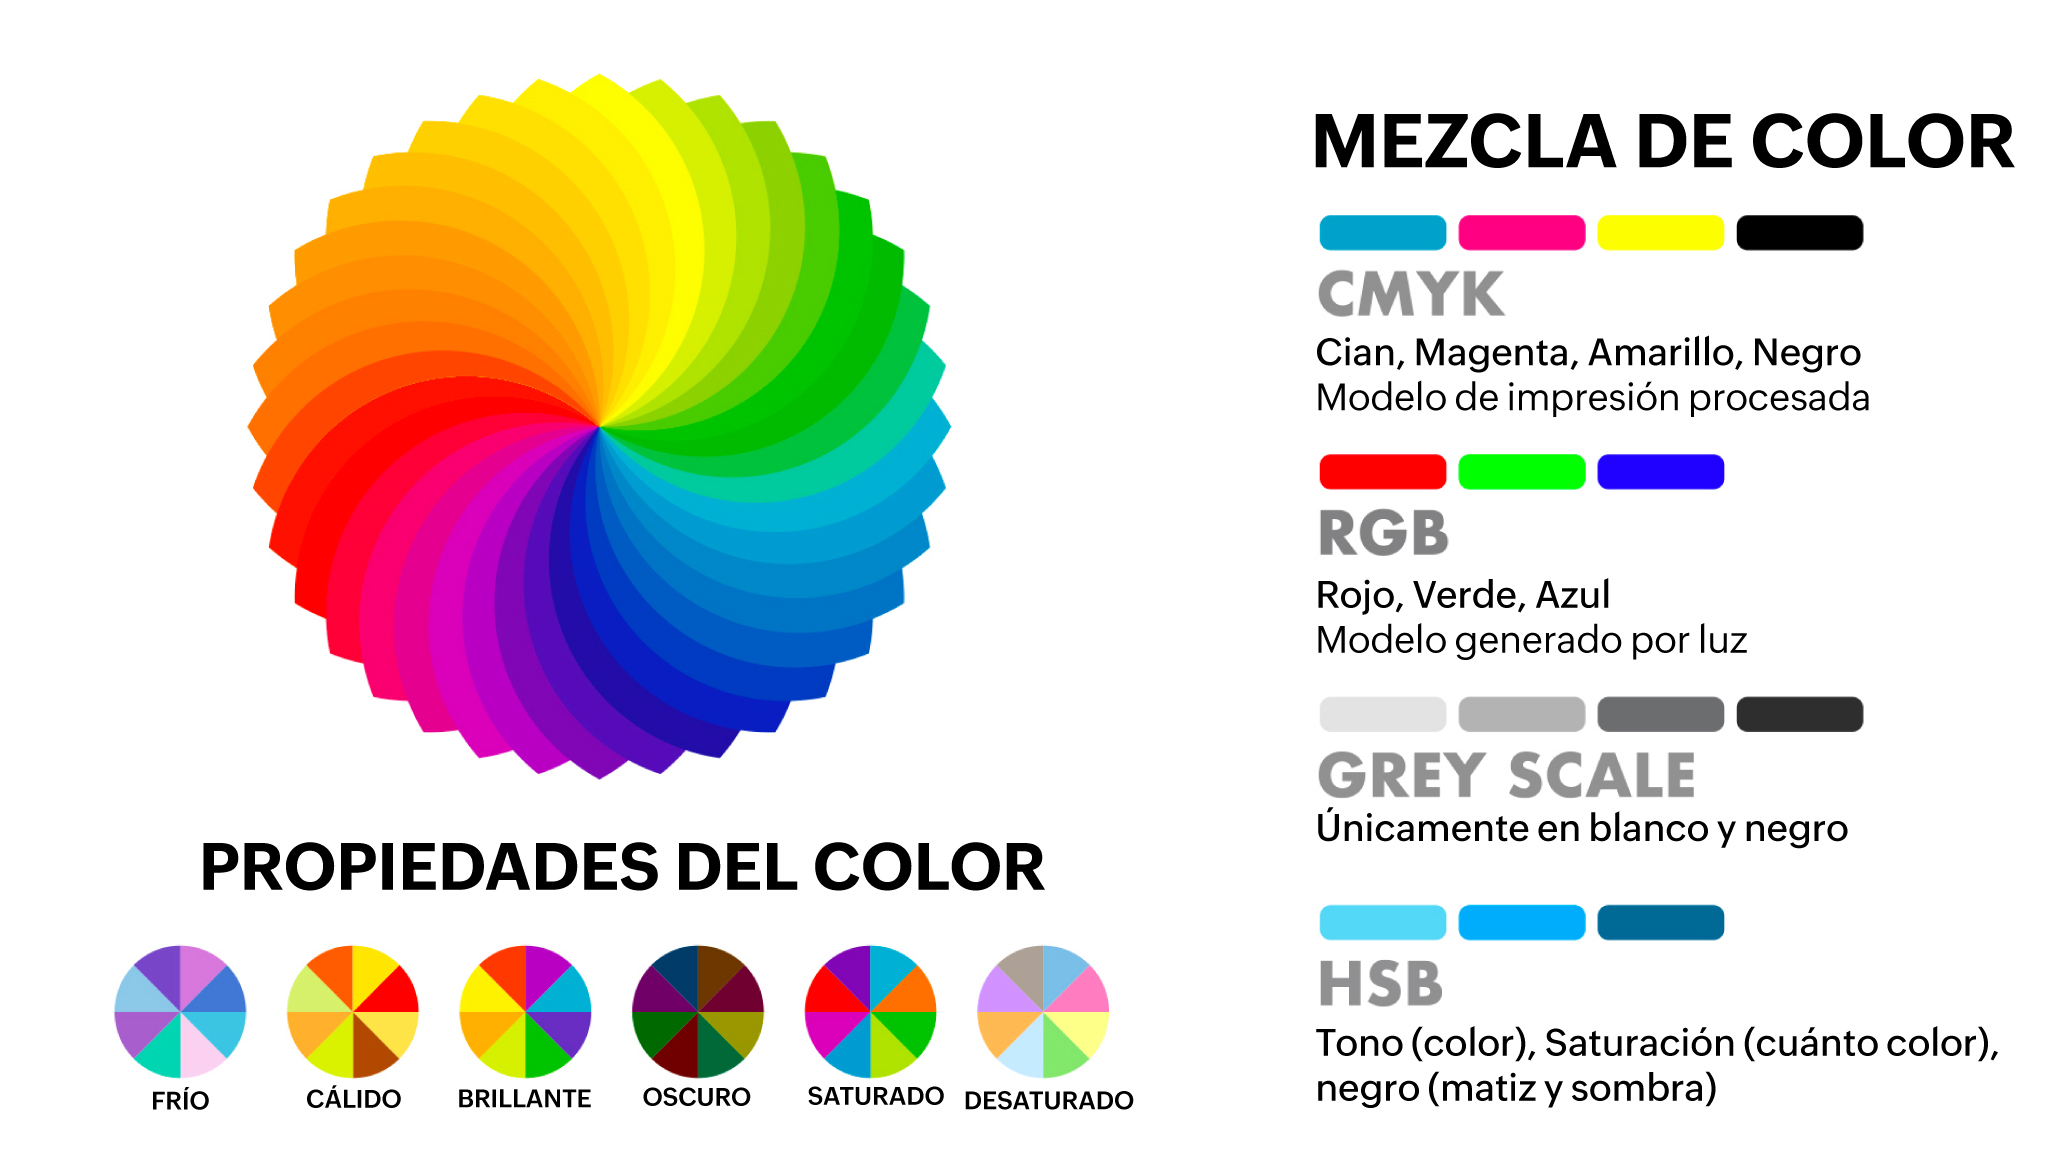 Sistemas de color y propiedades del color